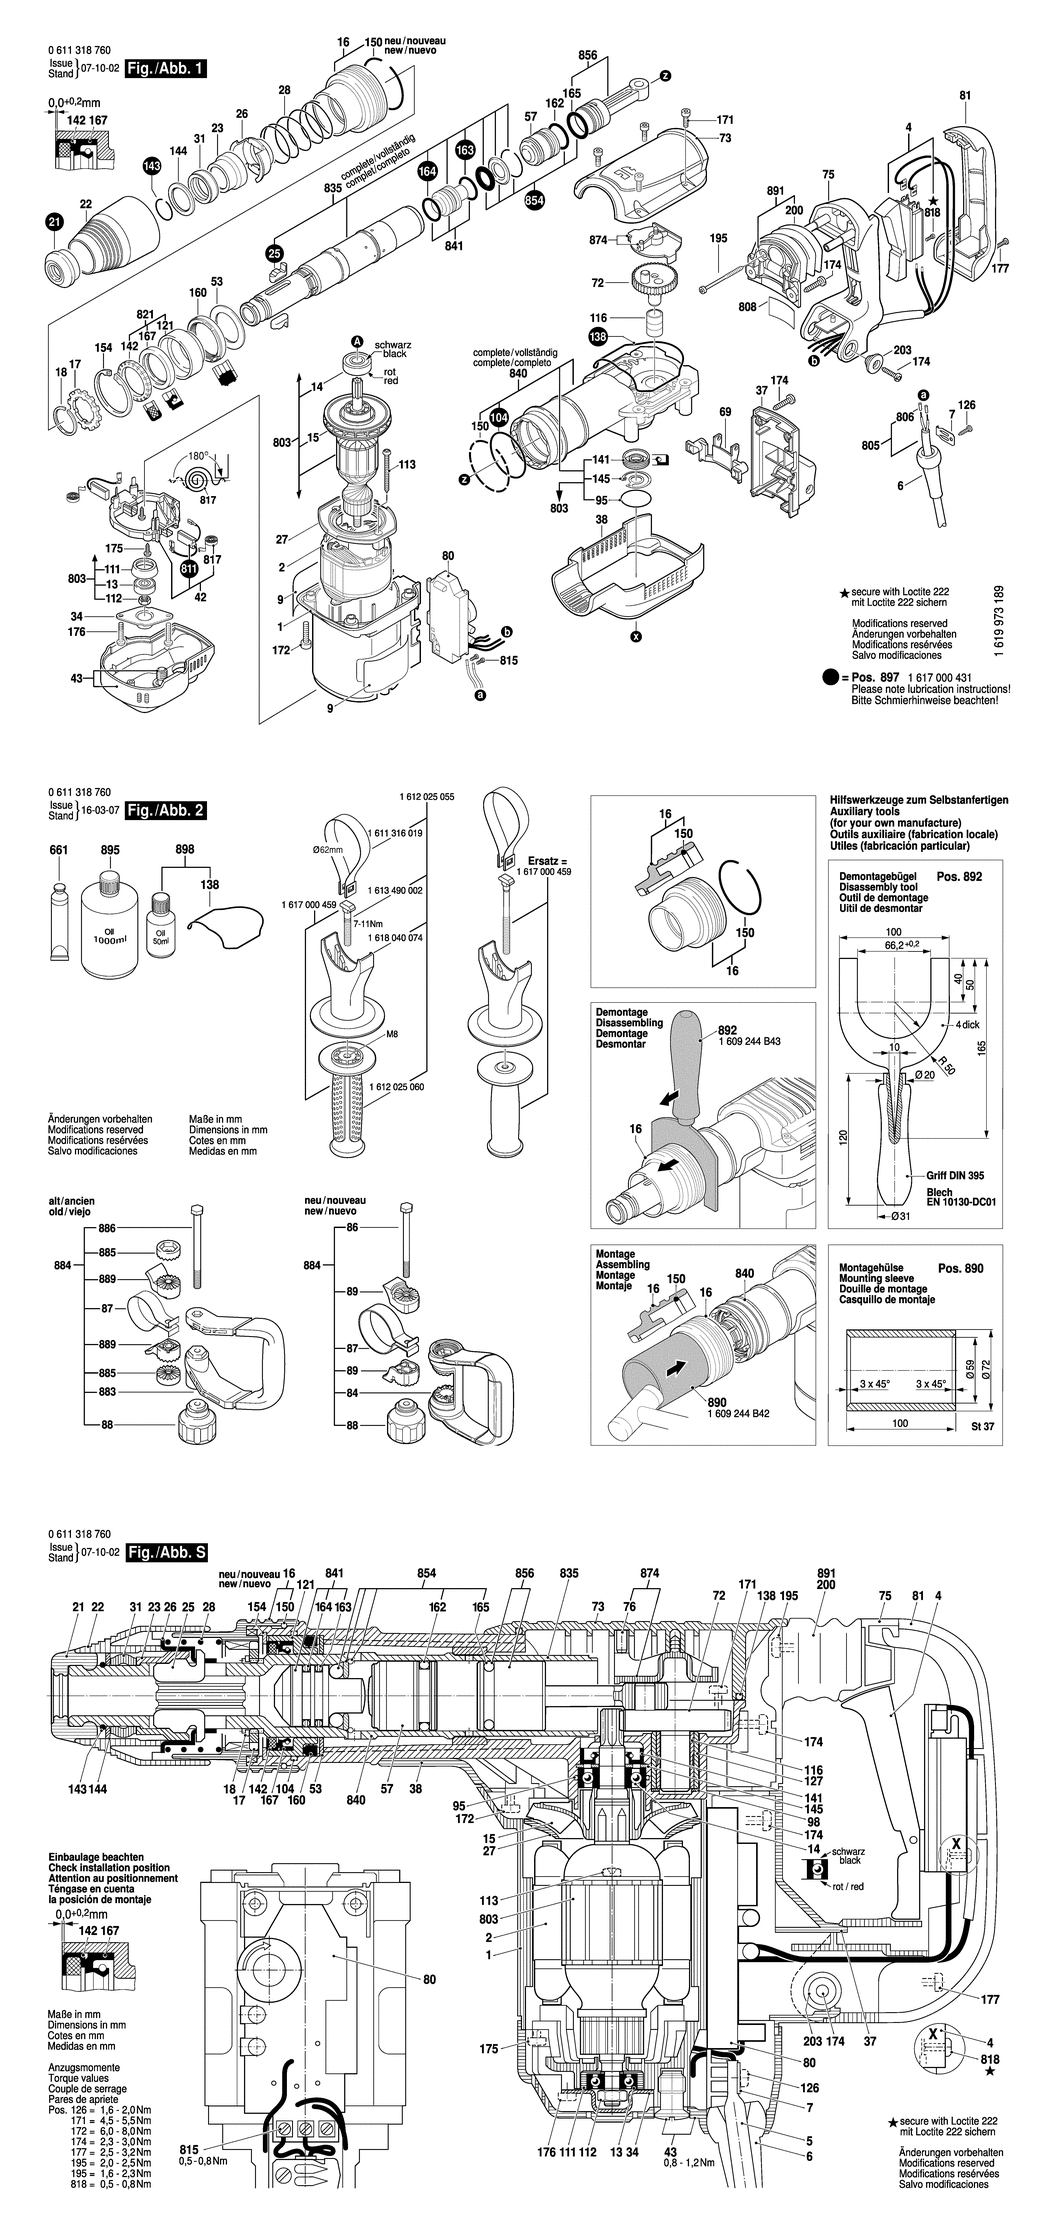 Bosch MH 5-XE / 0611318760 / EU 230 Volt Spare Parts